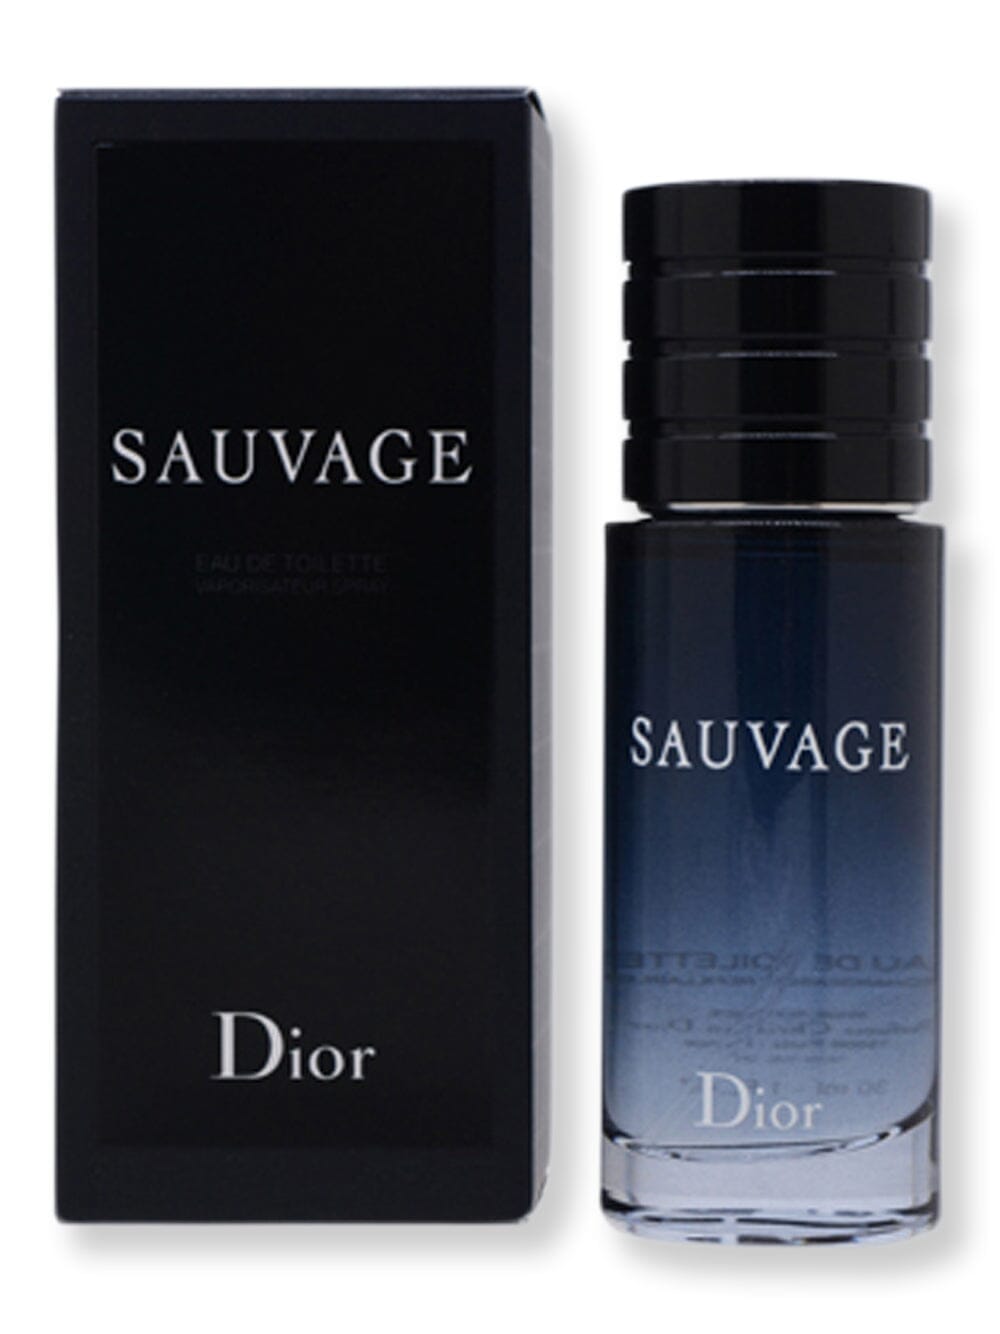 Dior Dior Sauvage EDT Spray 1 oz30 ml Perfume 